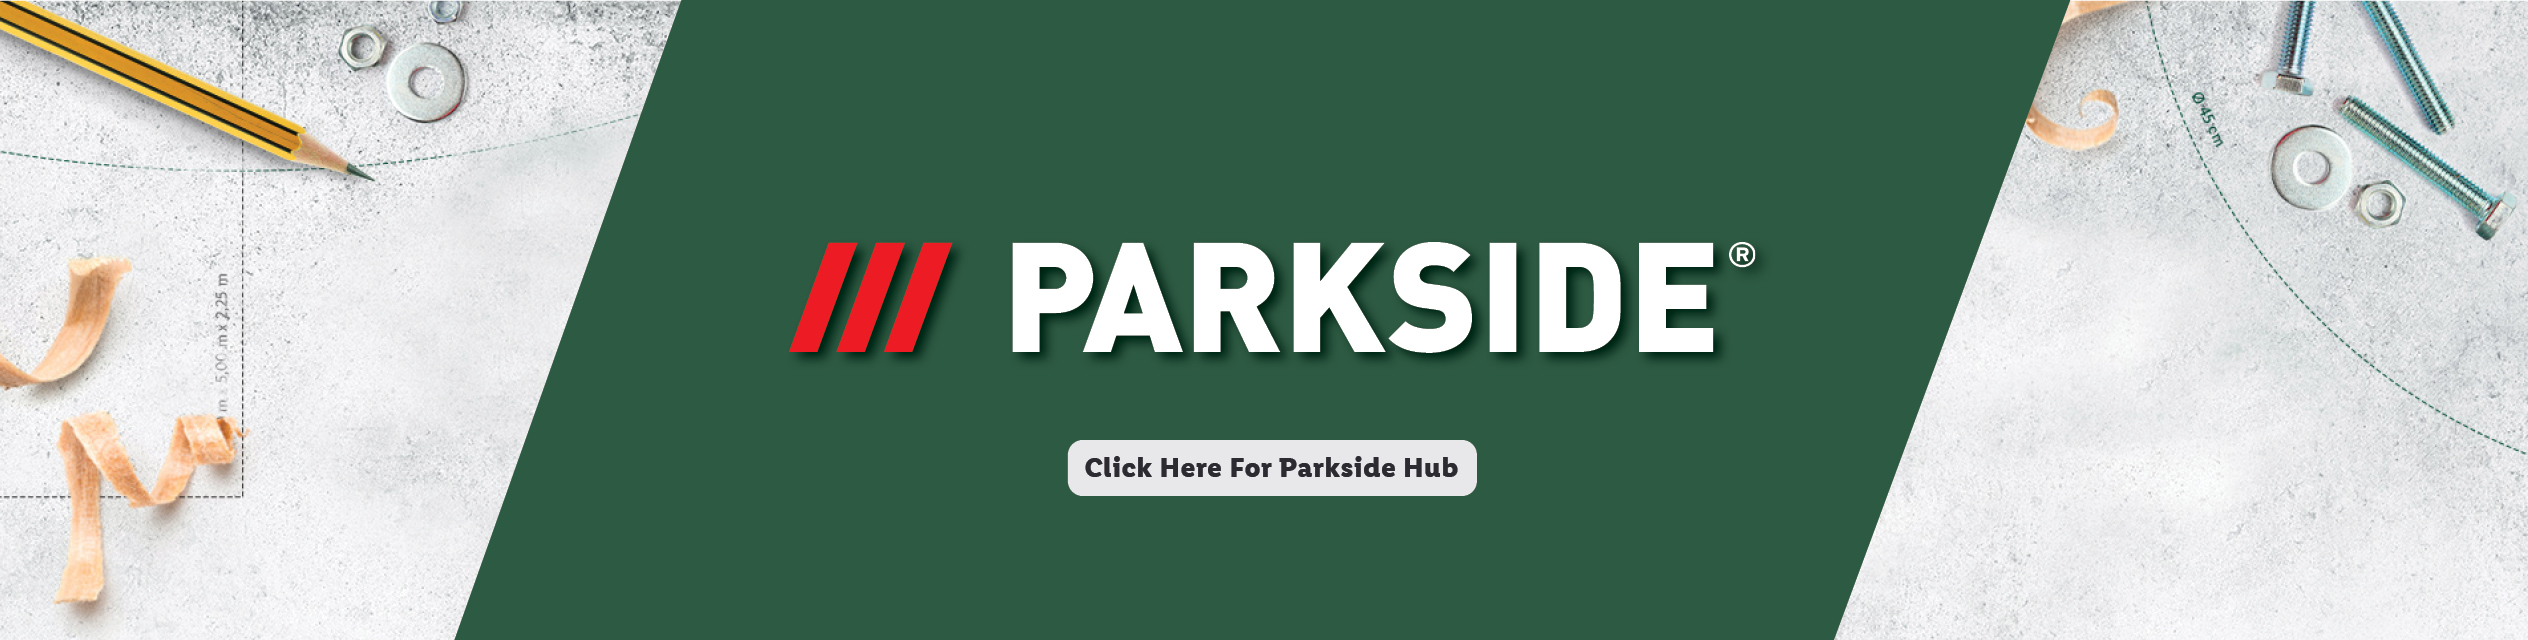 Parkside Hub